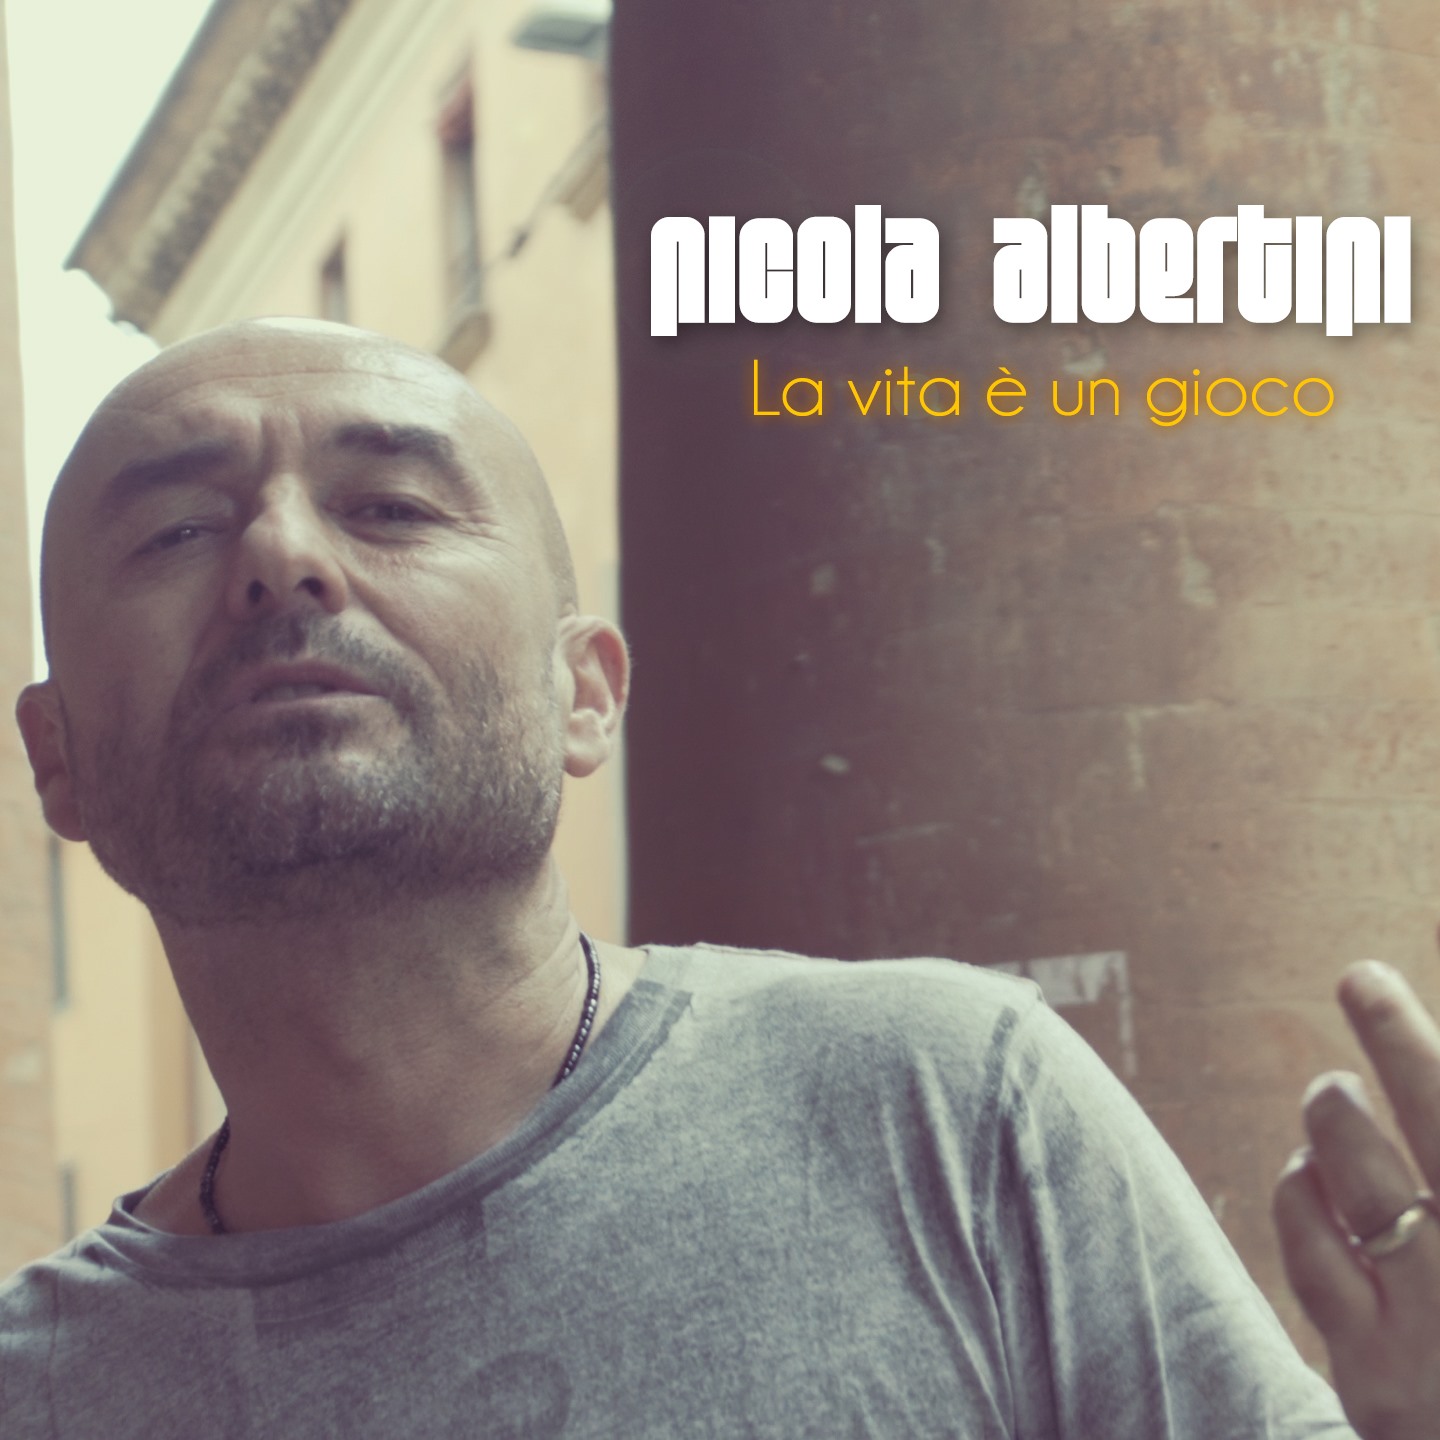 Nicola Albertini in radio e negli store digitali con “La vita è un gioco”